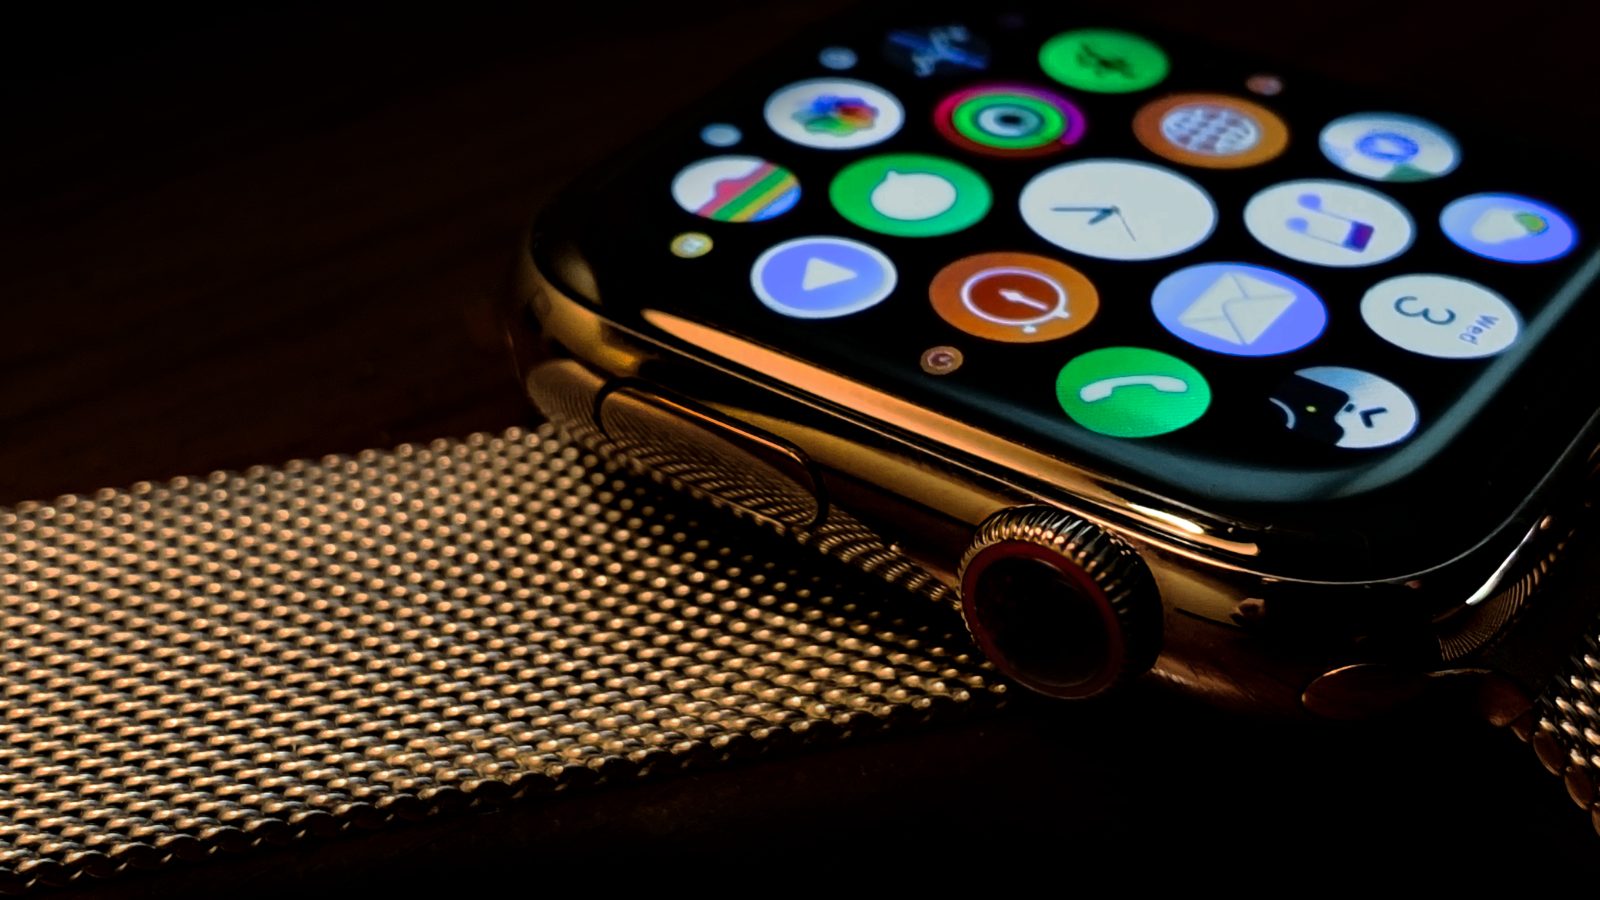 Apple Watch kullanıcıları yakında cihazlarındaki yerleşik uygulamaları silebilecek